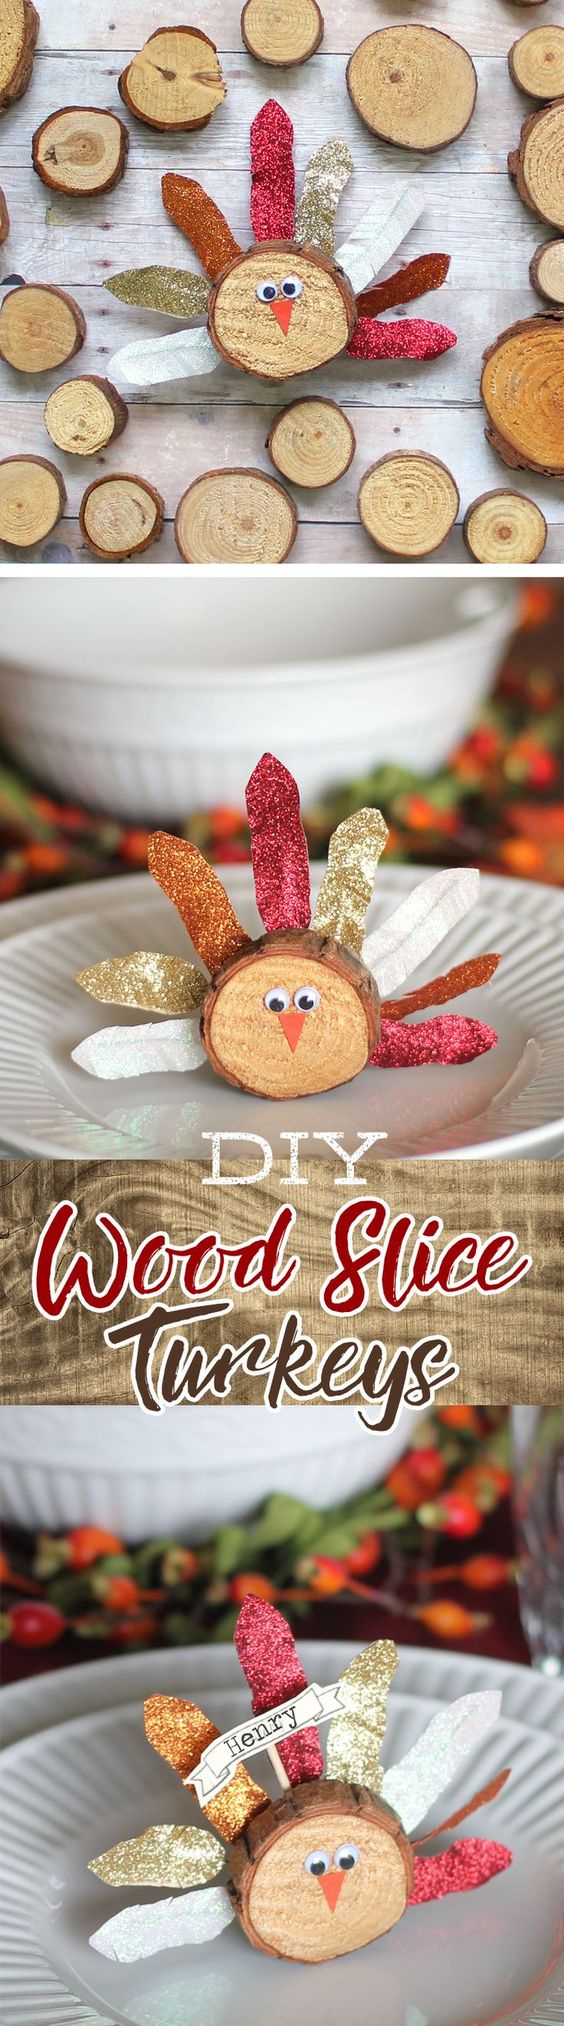 Wood Slice Turkey Craft with Washi Tape Feathers. 